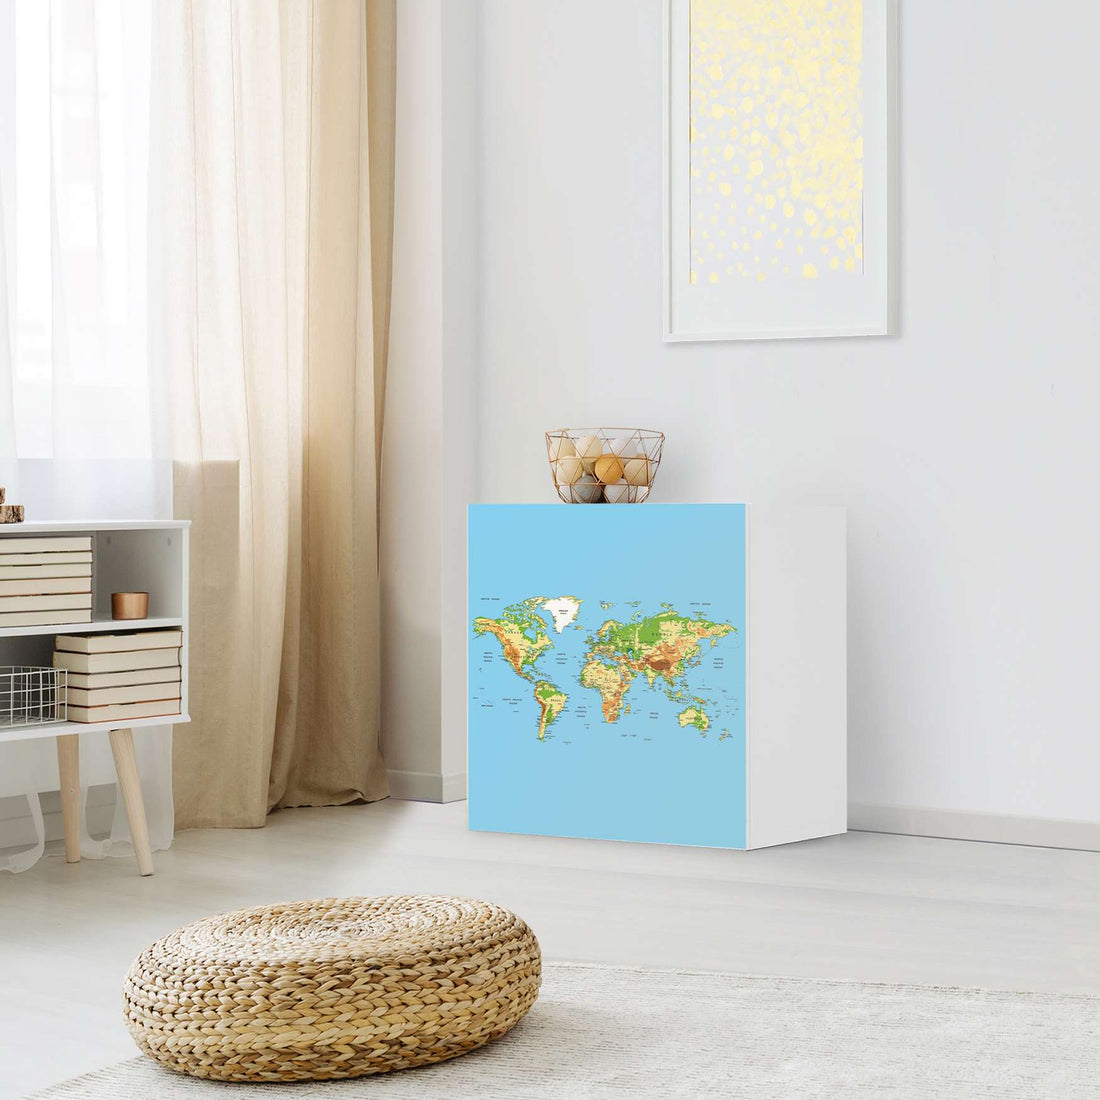 Klebefolie für Möbel Geografische Weltkarte - IKEA Besta Regal 1 Türe - Wohnzimmer